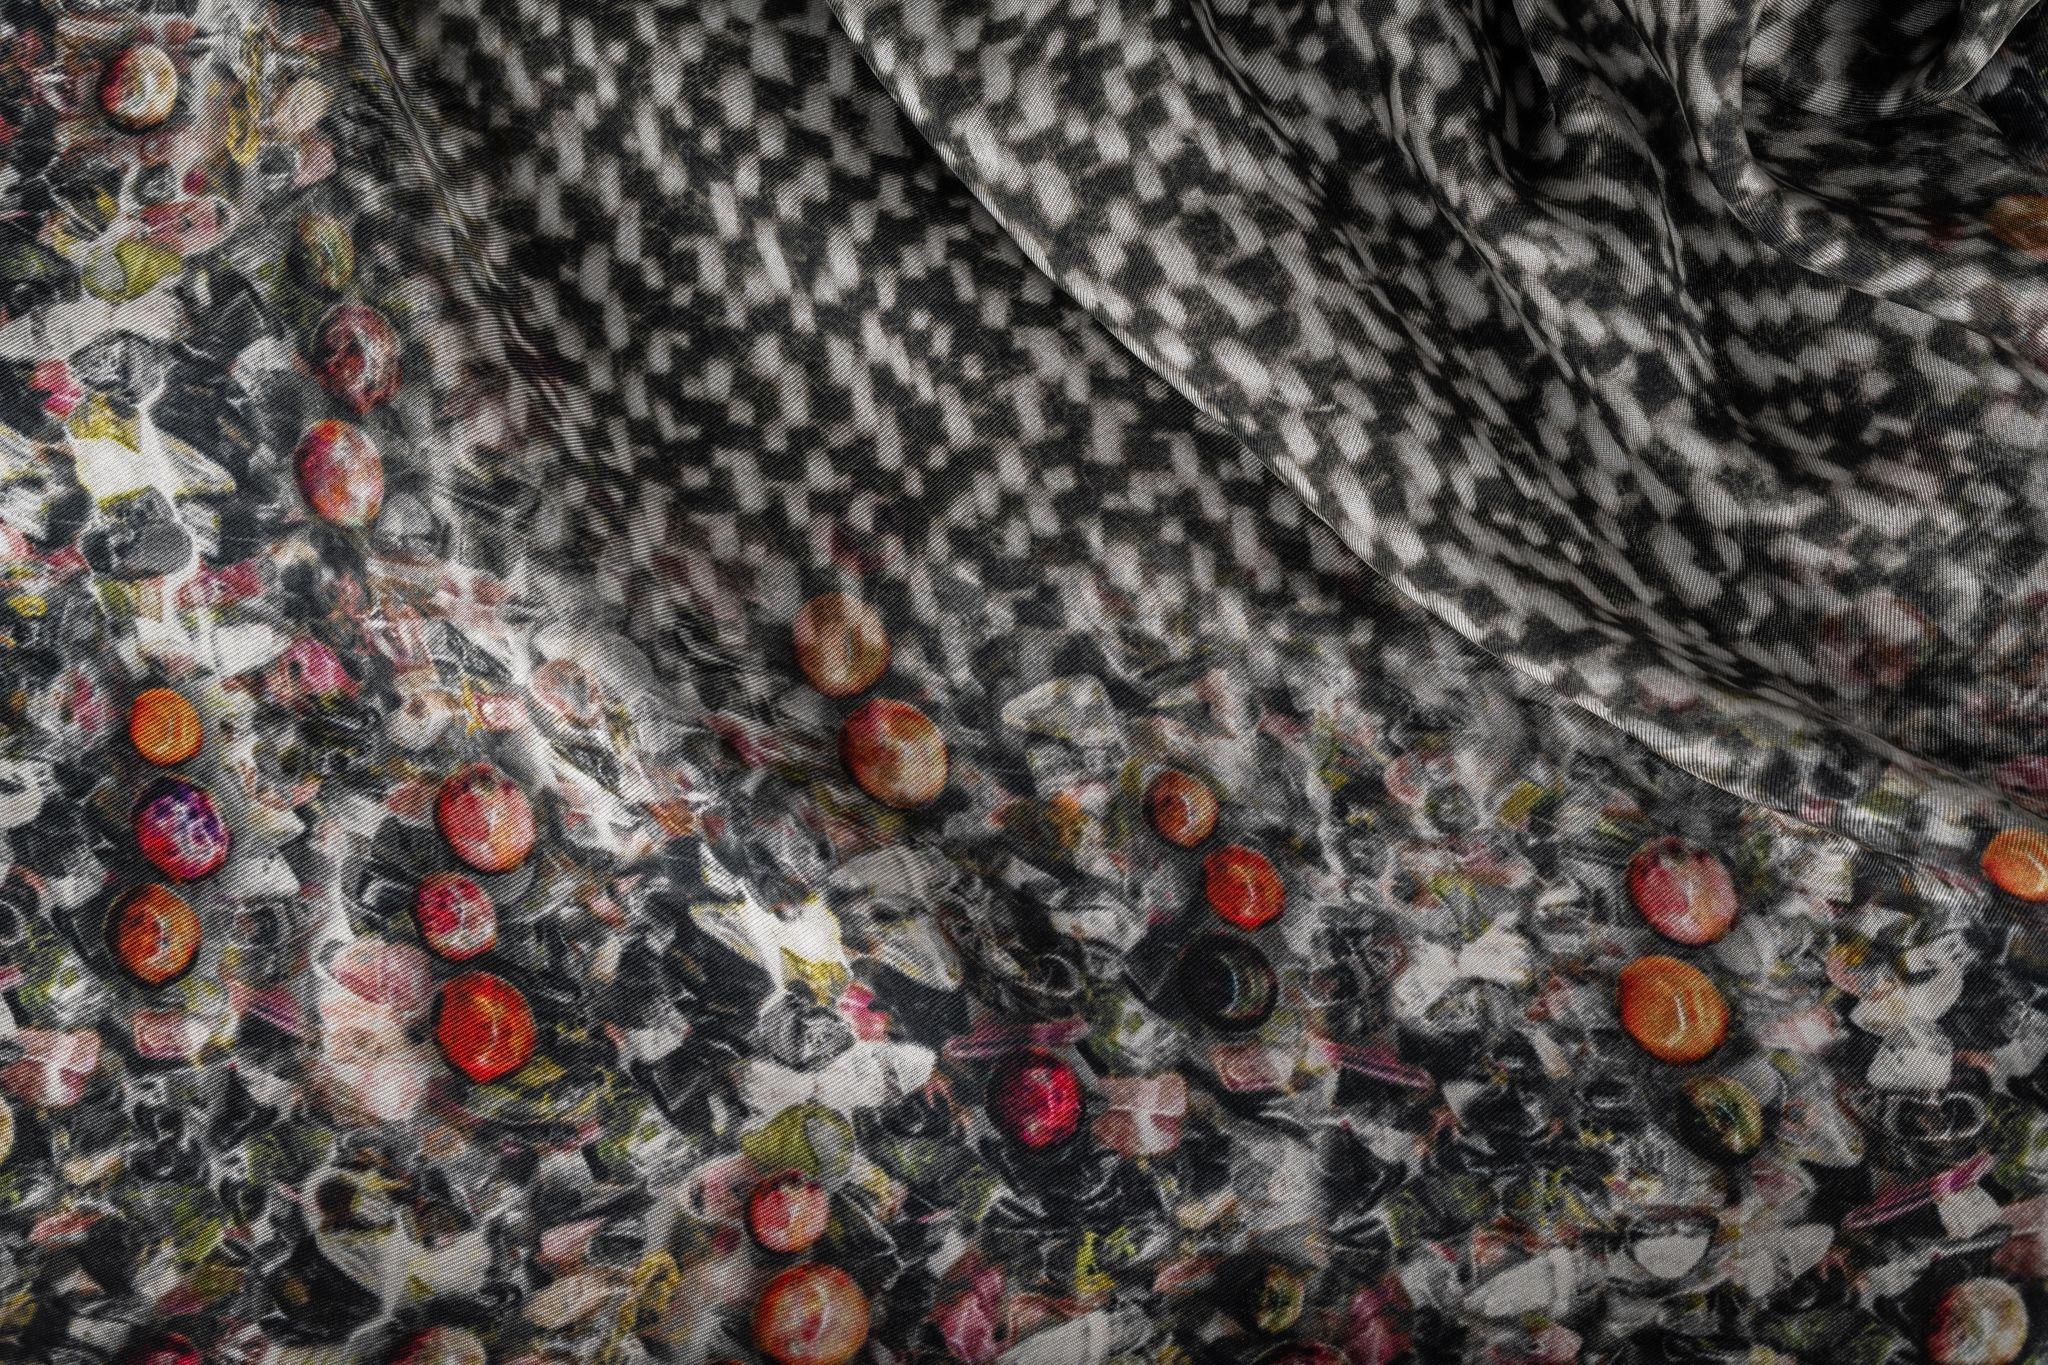 Chanel Kaschmirschal in Grau mit Tweed-Effekt. Das Muster zeigt ein großes CC-Logo in der Mitte. Der Artikel ist in neuem Zustand.